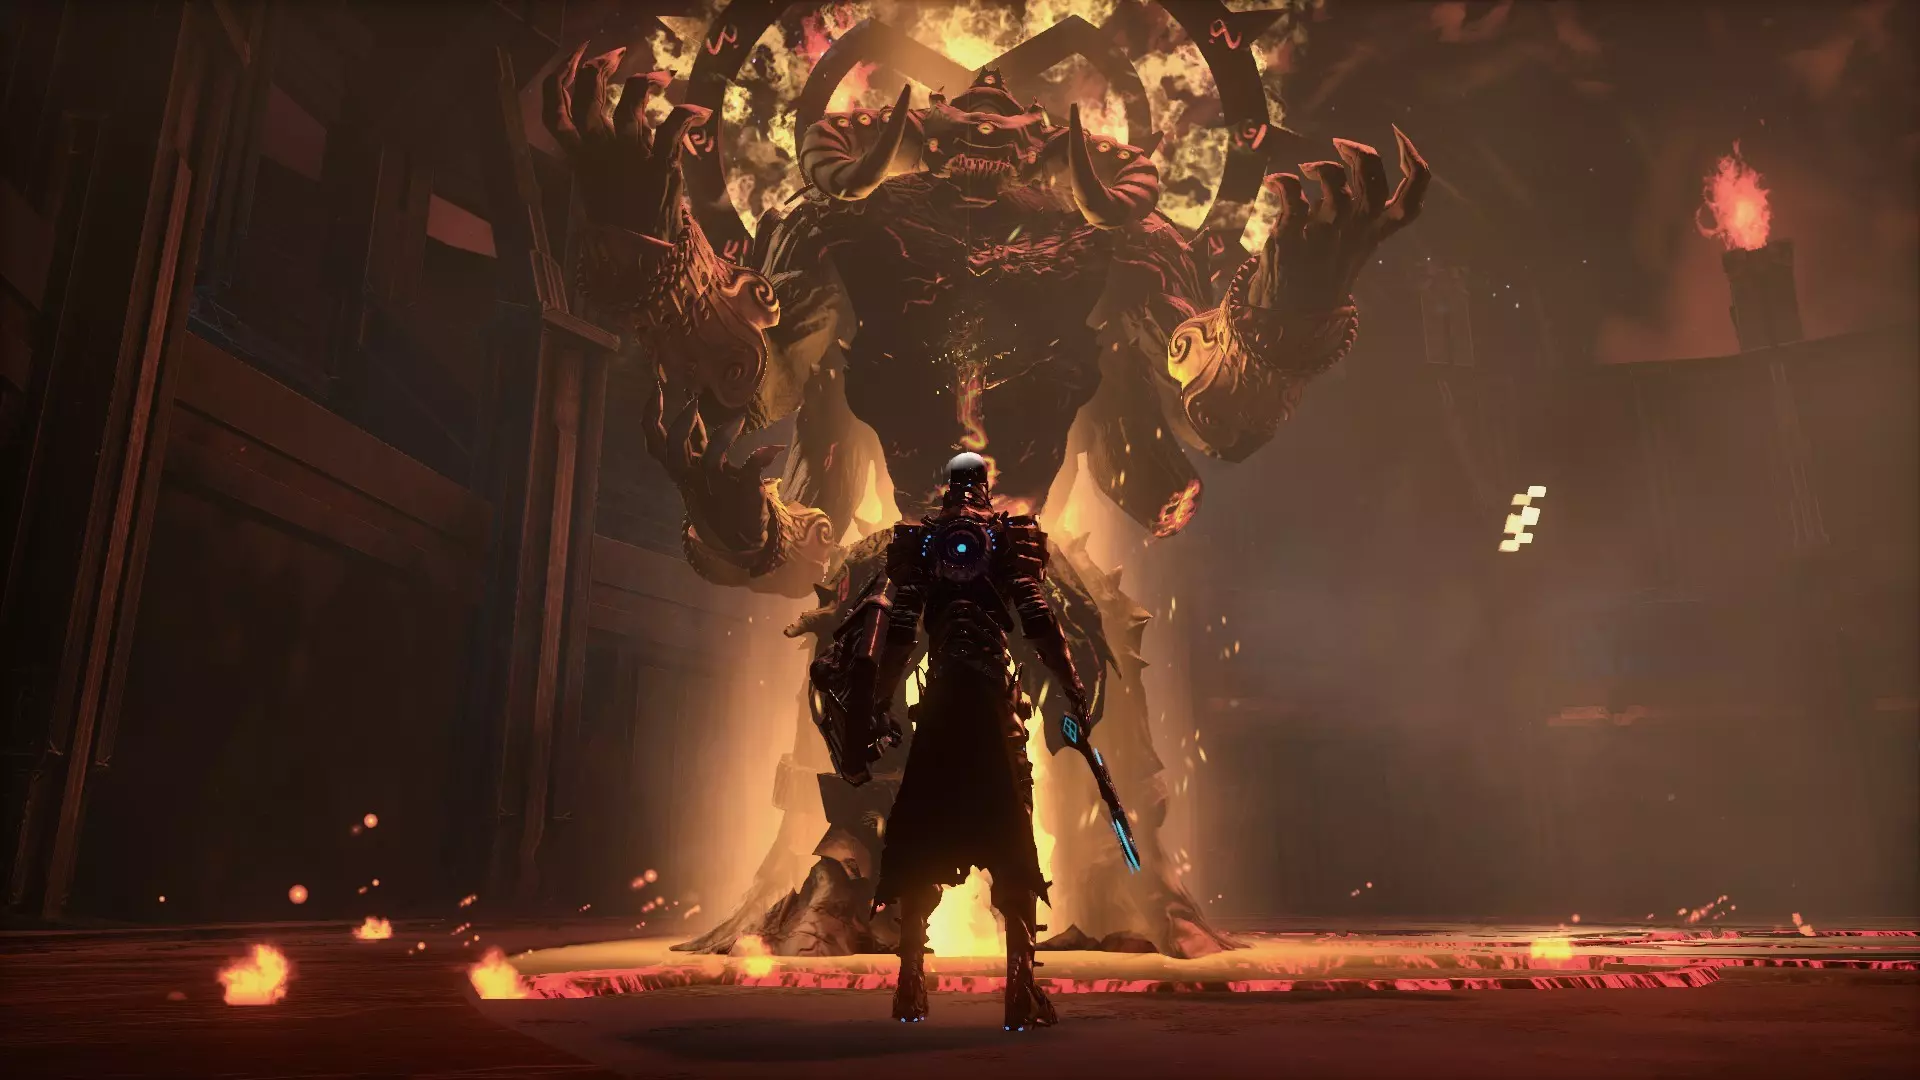 Разработчик Cradle Games и издатель tinyBuild объявили о том, что темная научно-фантастическая RPG Hellpoint была отложена (первоначально планировалось выпустить ее на следующей неделе 16 апреля).